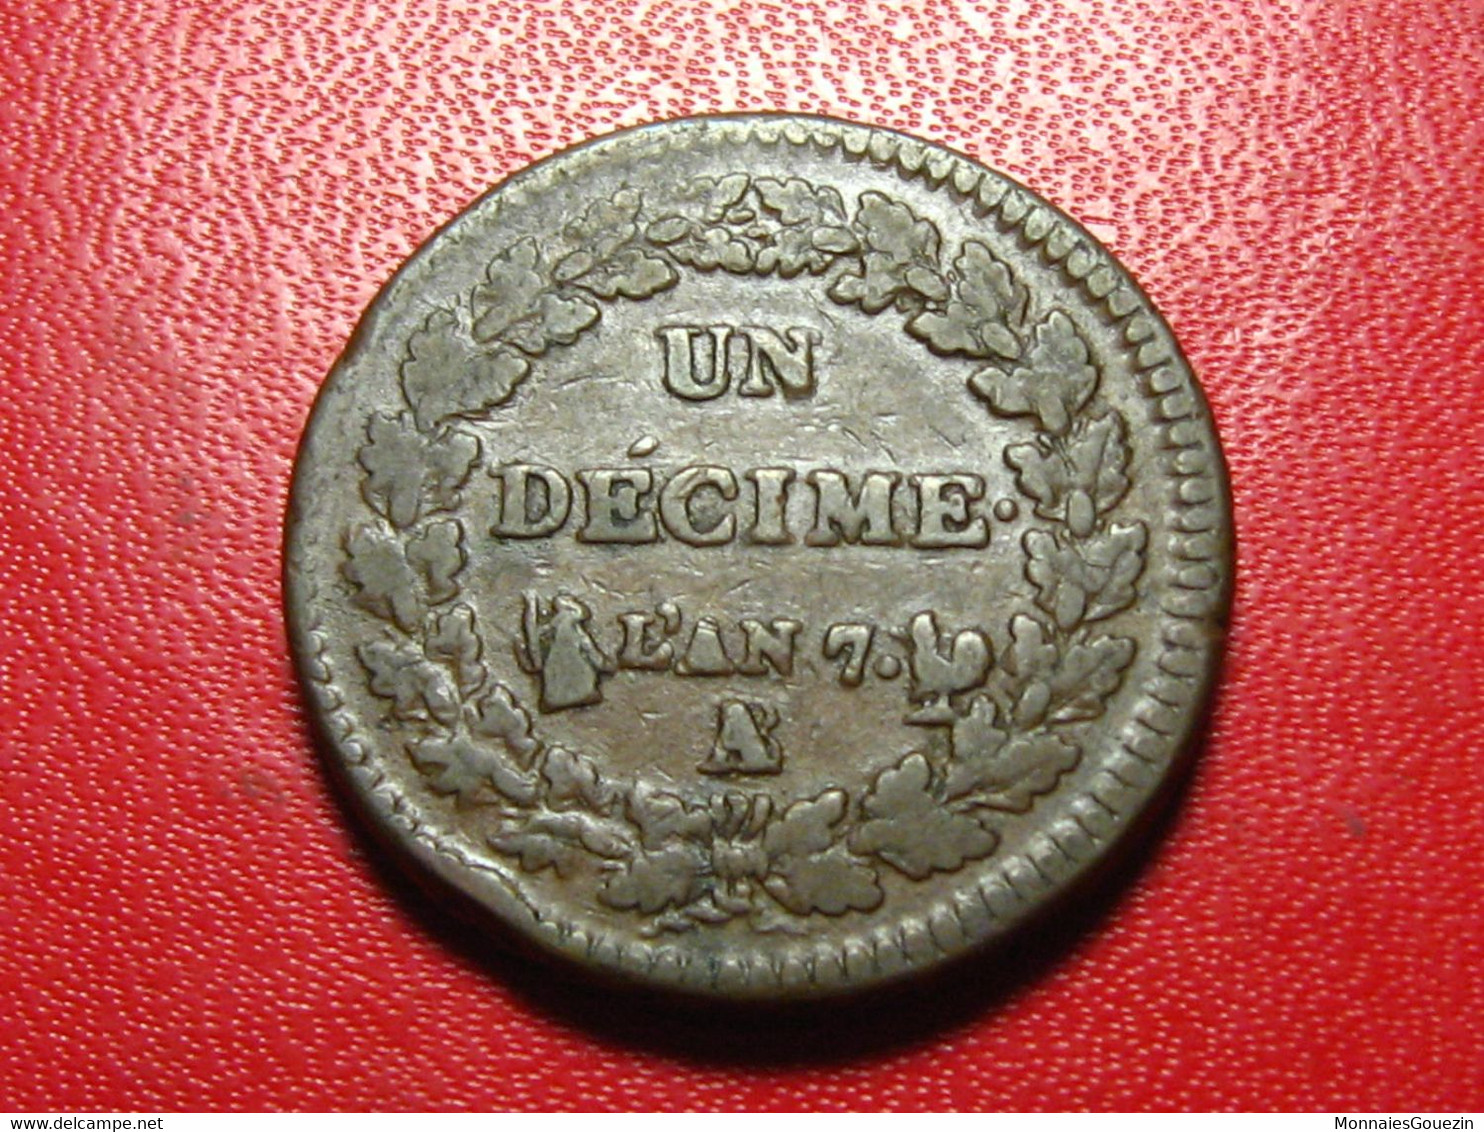 France - Décime An 7/5 A/B Paris/Rouen Dupré - Magnifique Coin Choqué 5088 - 1795-1799 Direttorio